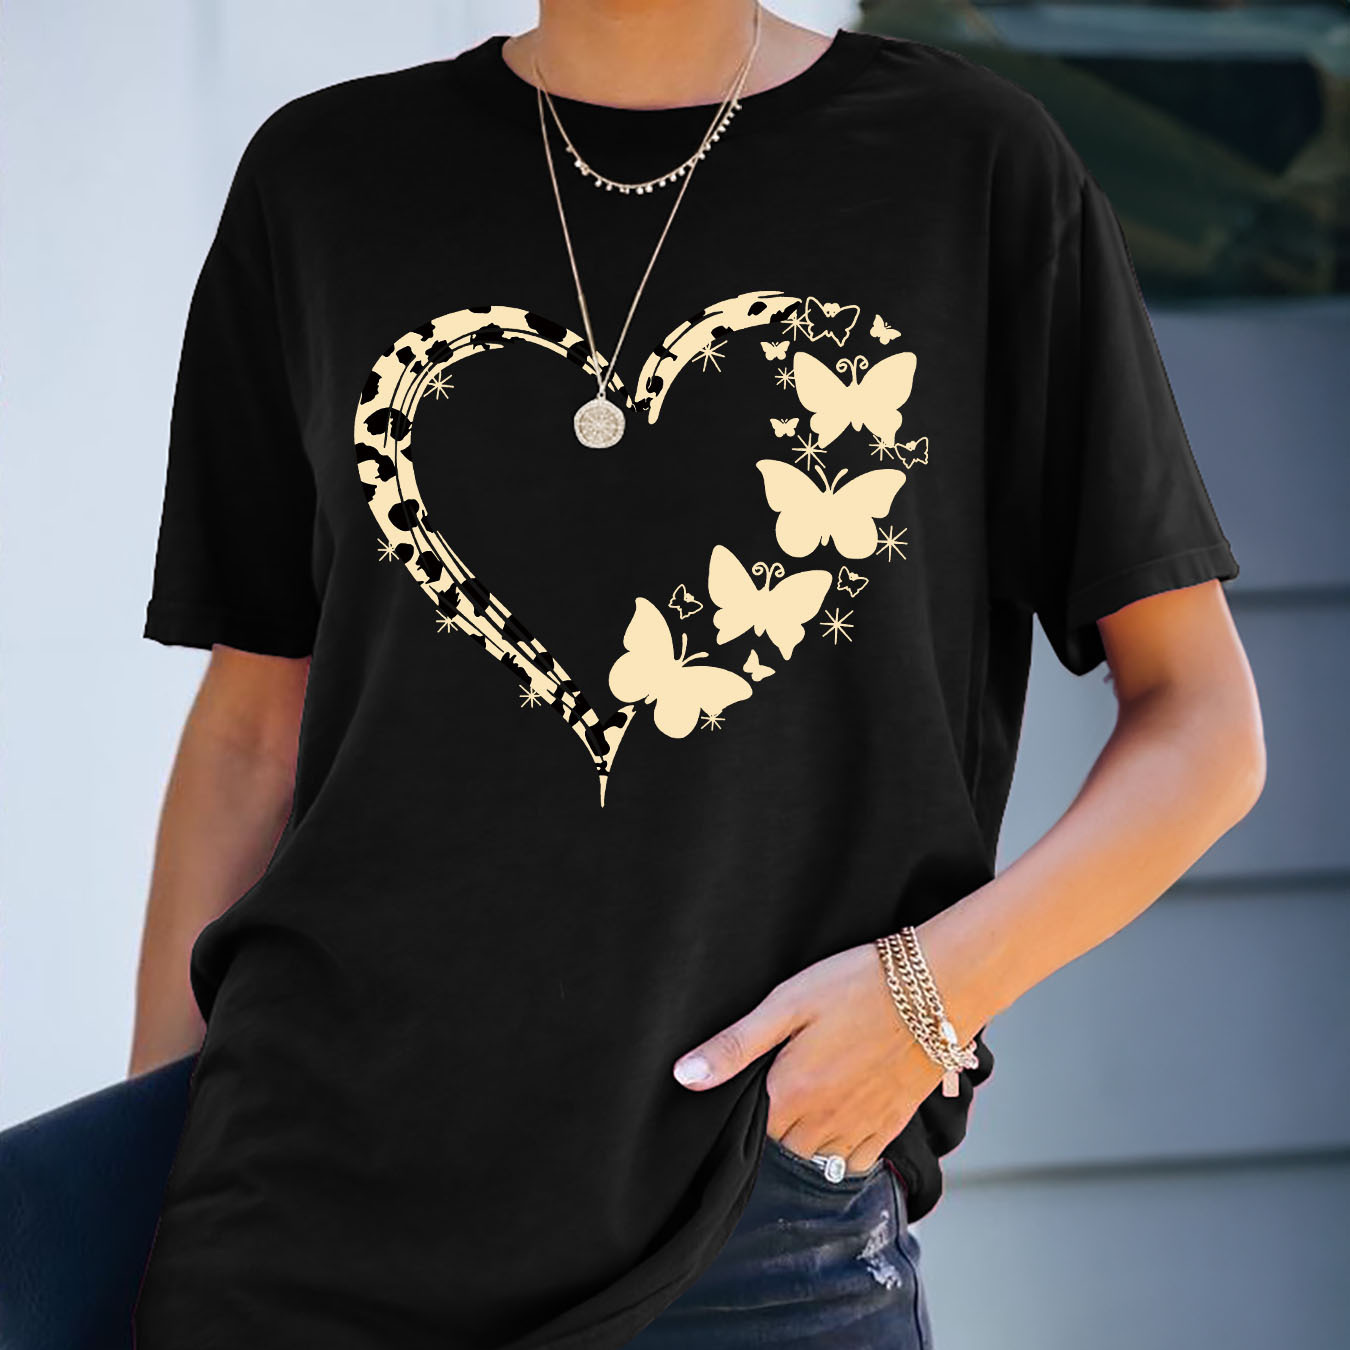 

Heart ＆ Butterflies Print Crew Neck T-shirt, Casual Short Sleeve T-shirt For Spring & Summer, Women's Clothing